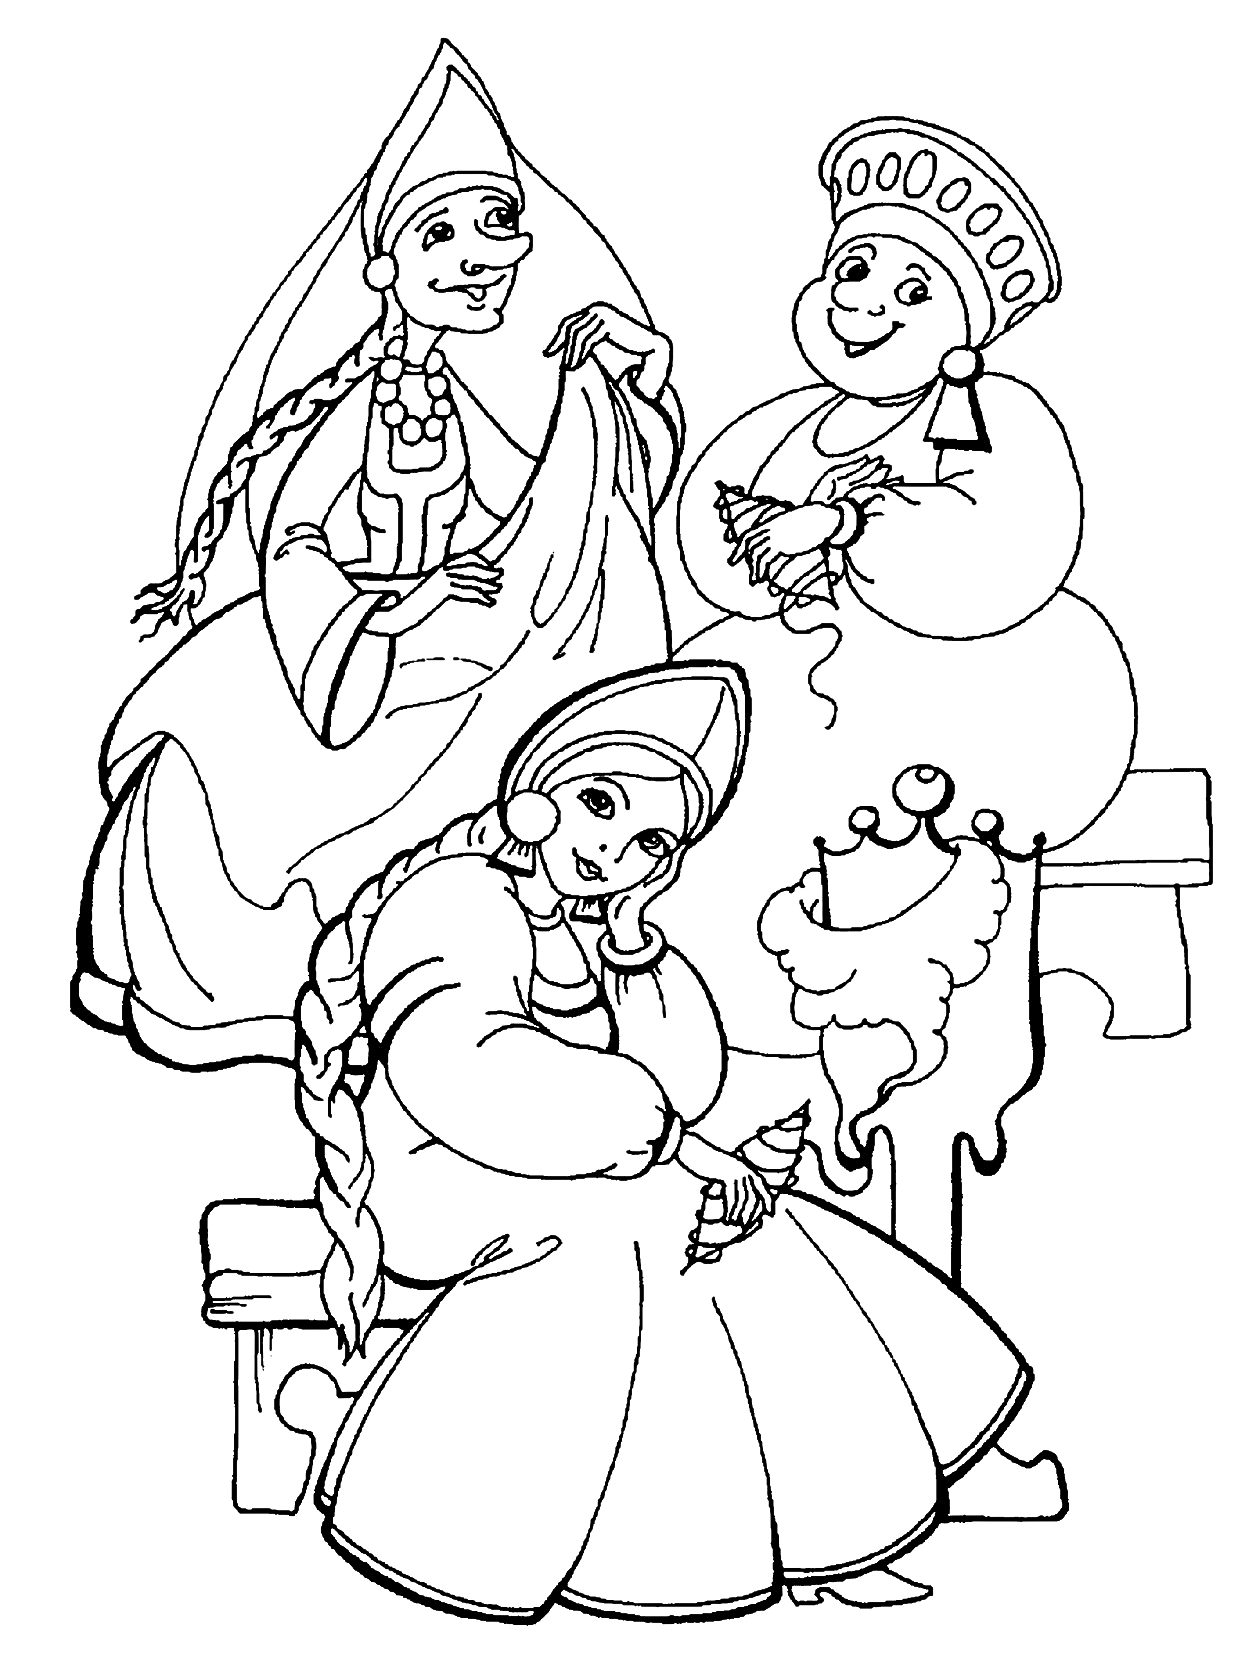 Раскраска Три сестры в традиционных русских костюмах, сидящие на лавке